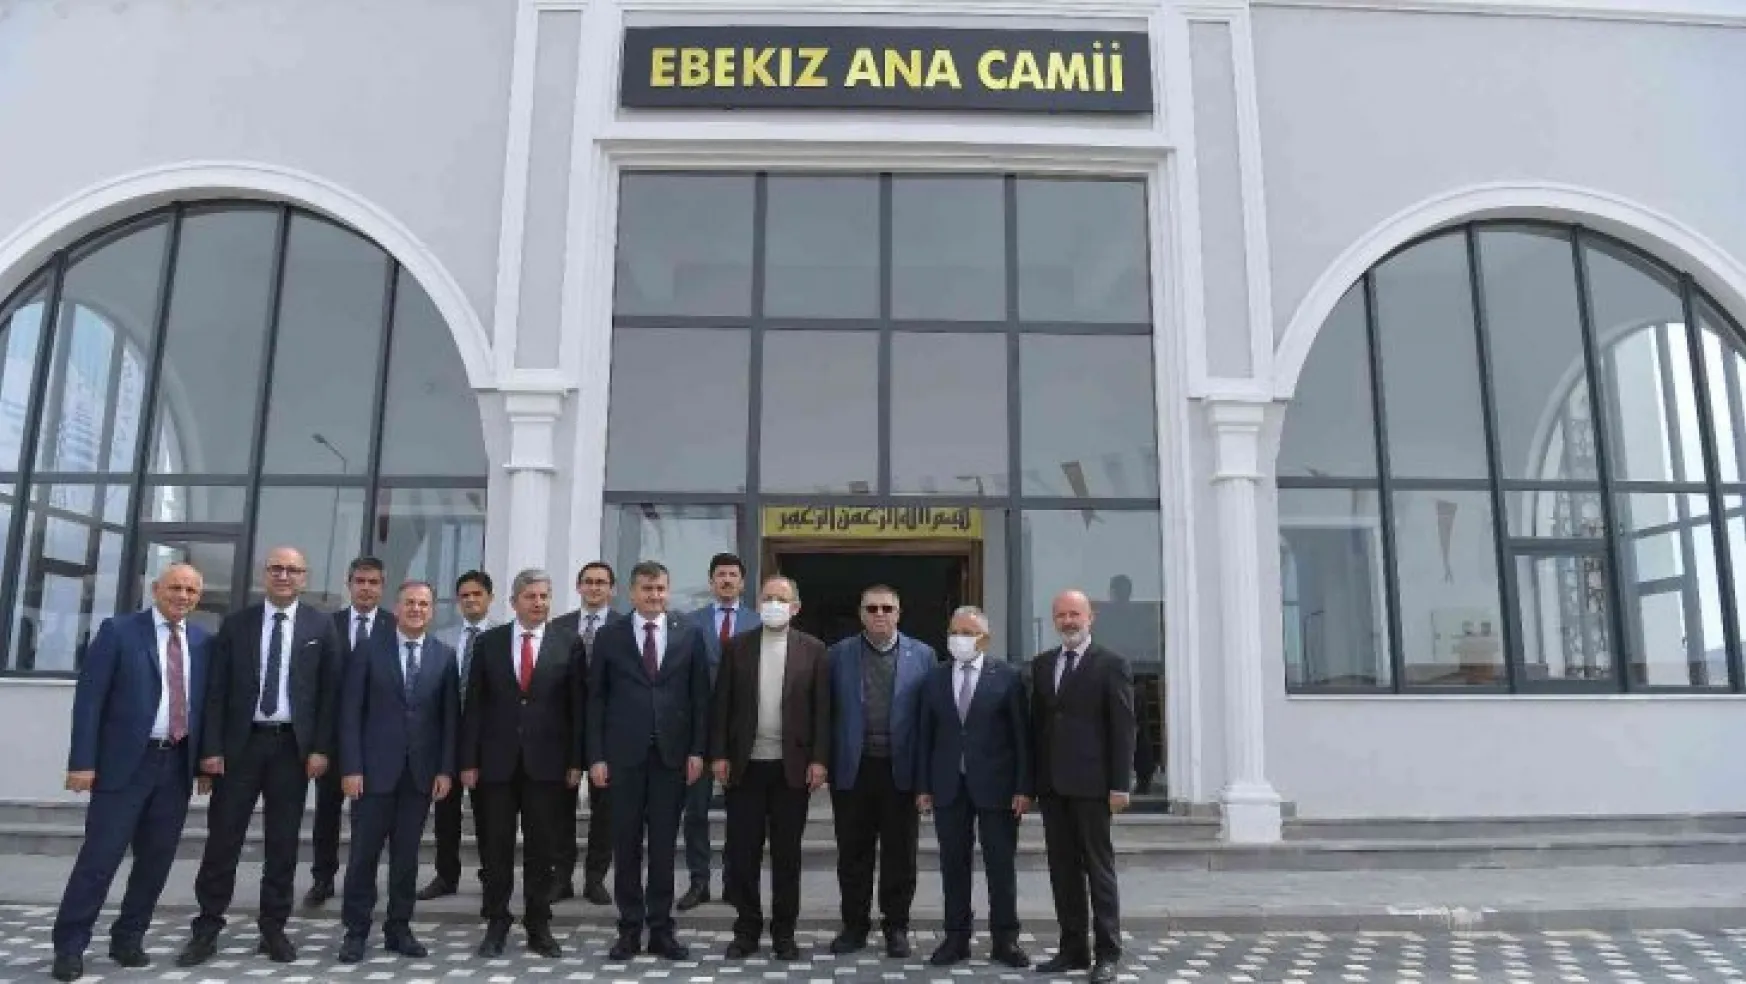 Bünyan'da Ebekız Ana Cami'nin açılışı yapıldı